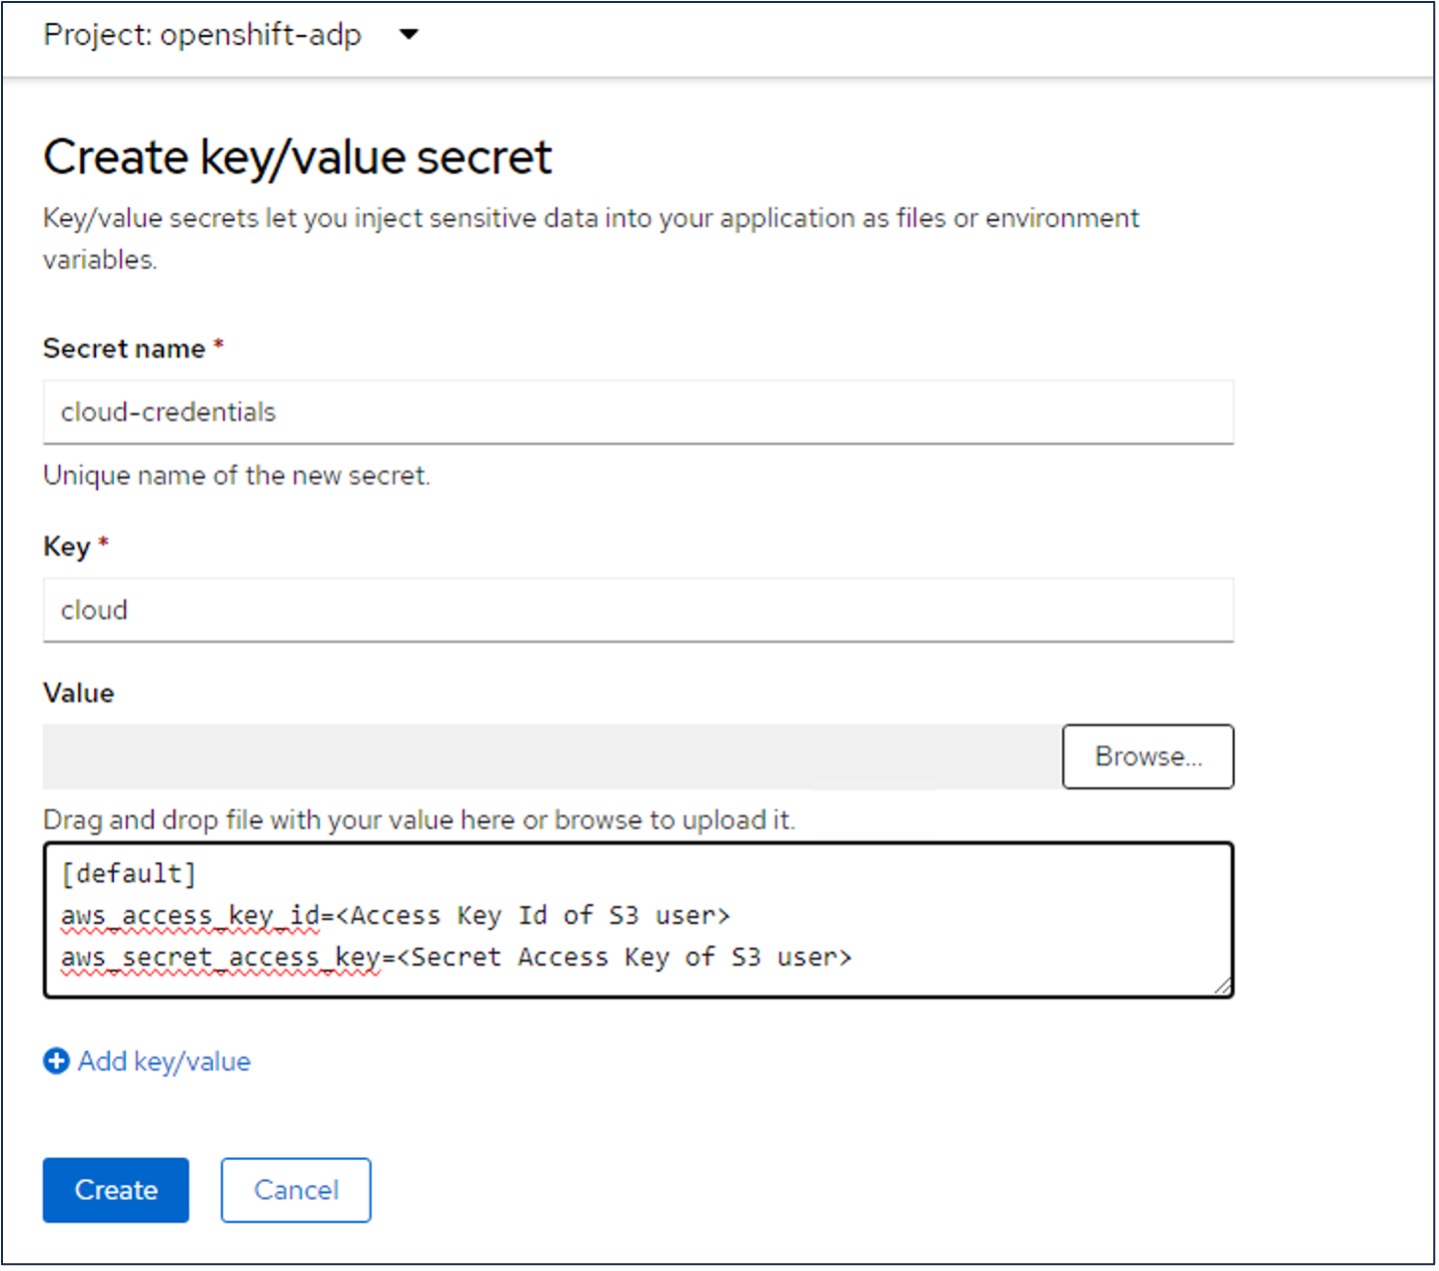 Create Secret for S3 user credentials